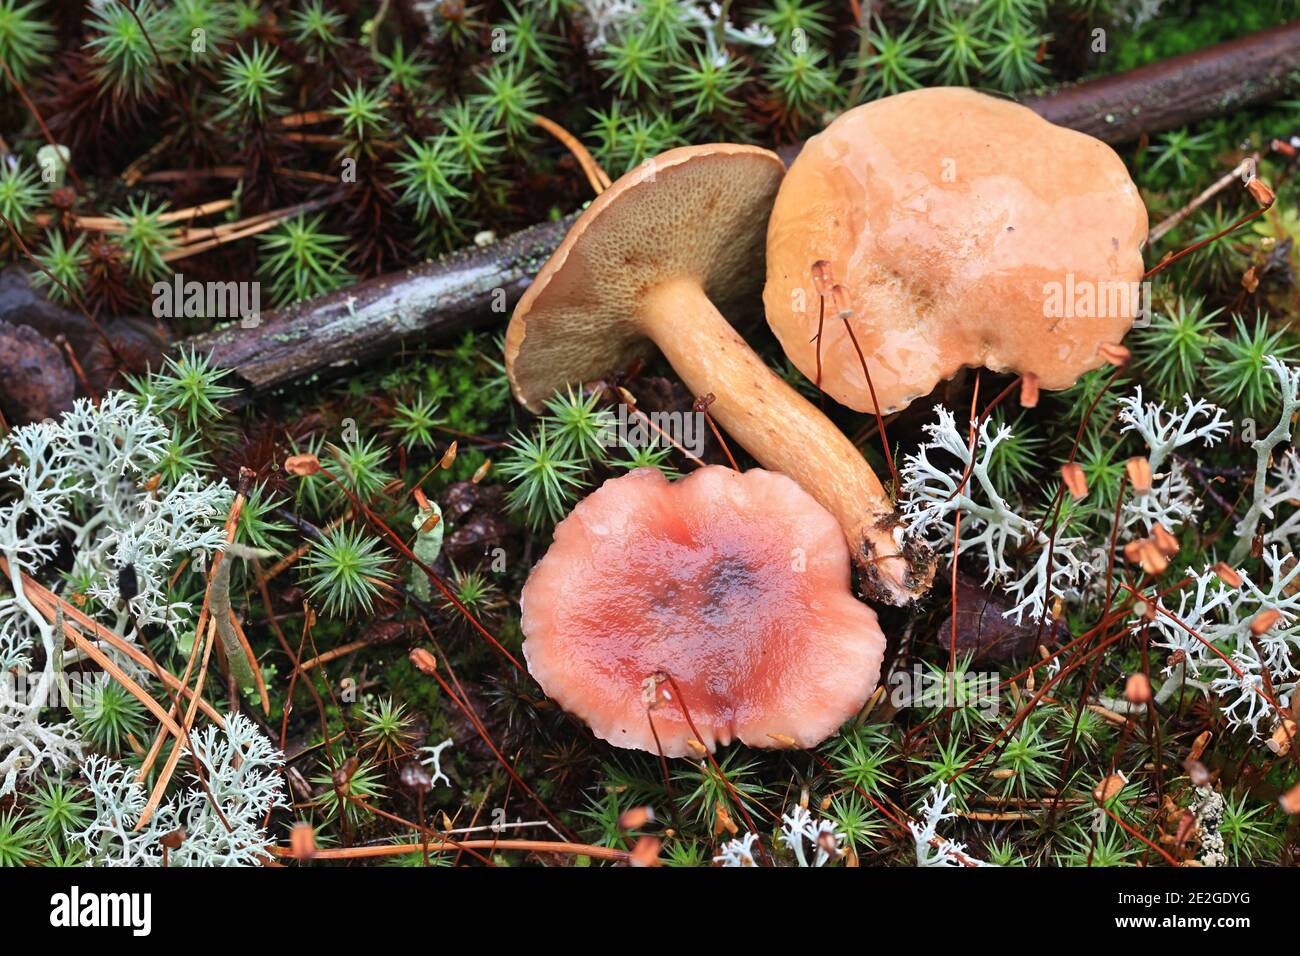 Gomphidius roseus, la pointe rosée et Suillus bovinus, le bolete bovin, champignons sauvages de Finlande Banque D'Images